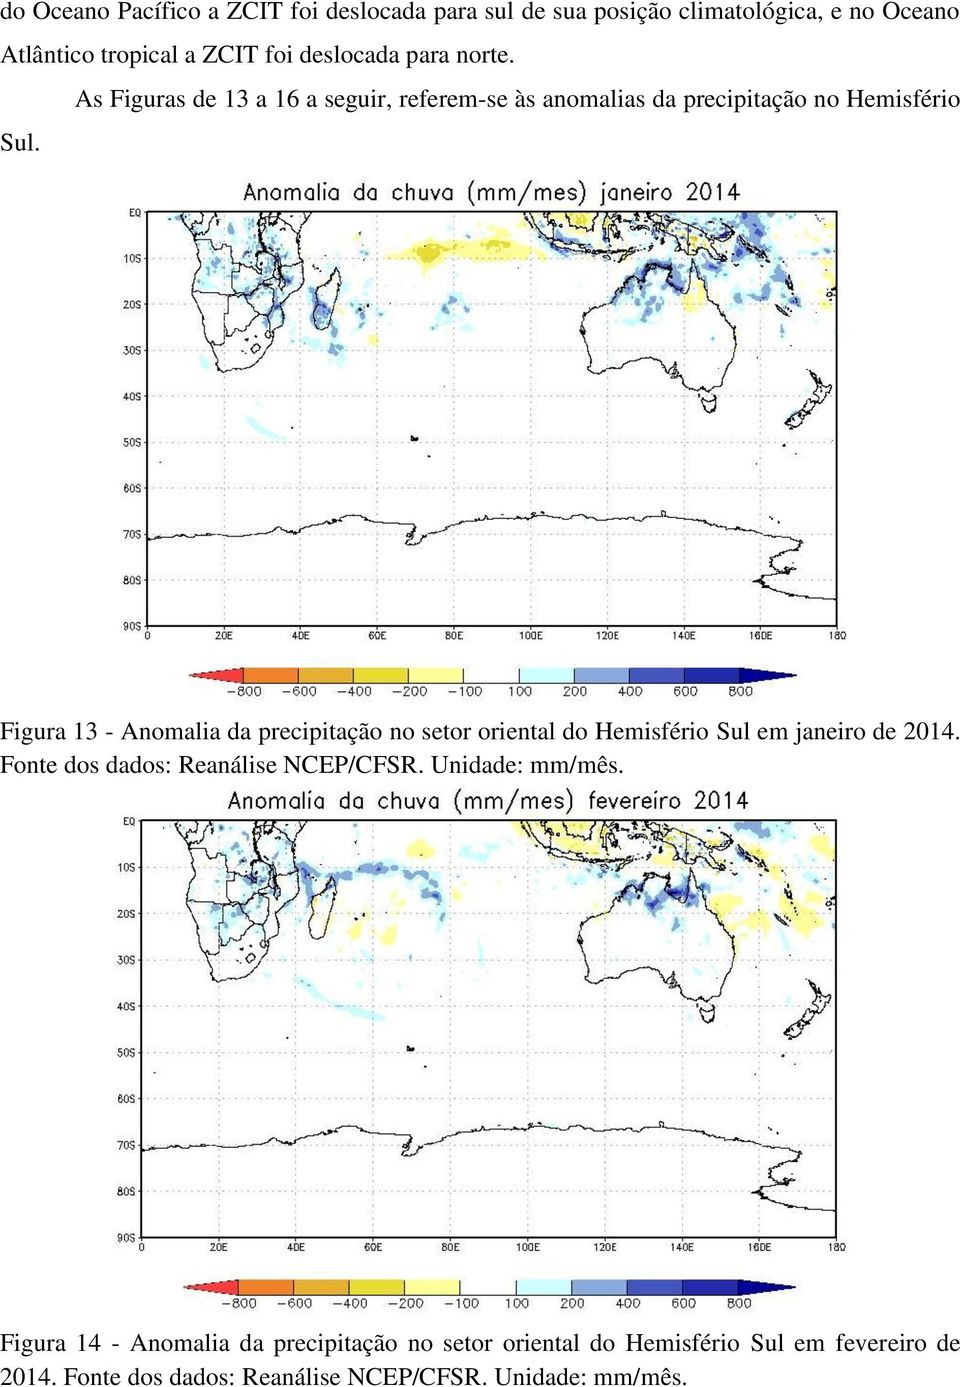 Figura 13 - Anomalia da precipitação no setor oriental do Hemisfério Sul em janeiro de 2014. Fonte dos dados: Reanálise NCEP/CFSR.